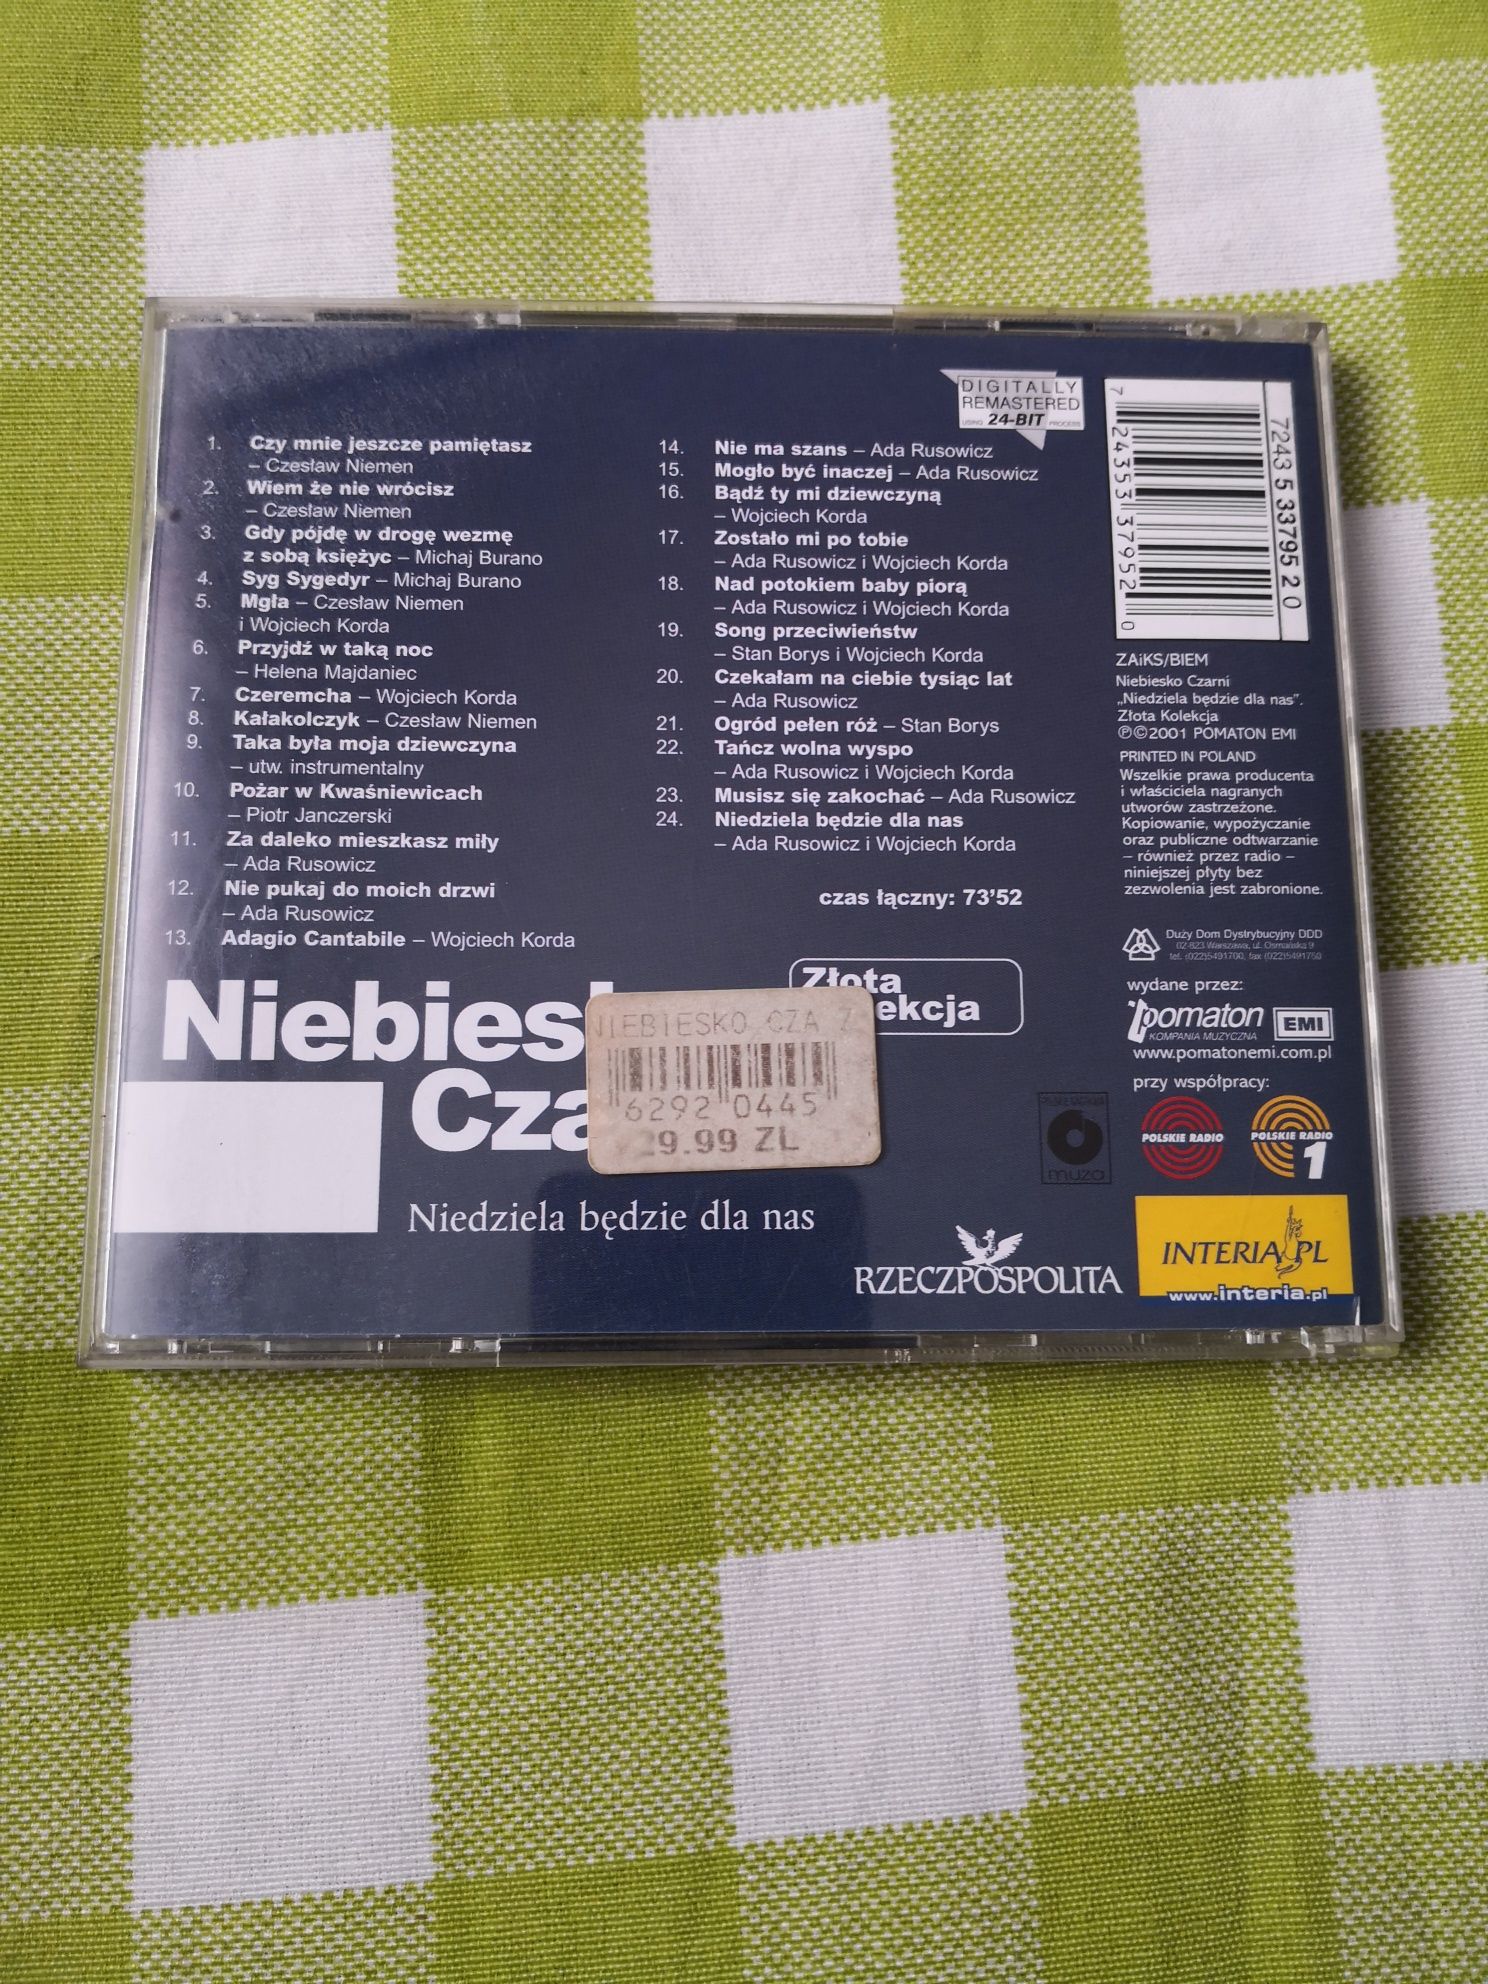 Niebiesko Czarni płyta CD muzyka